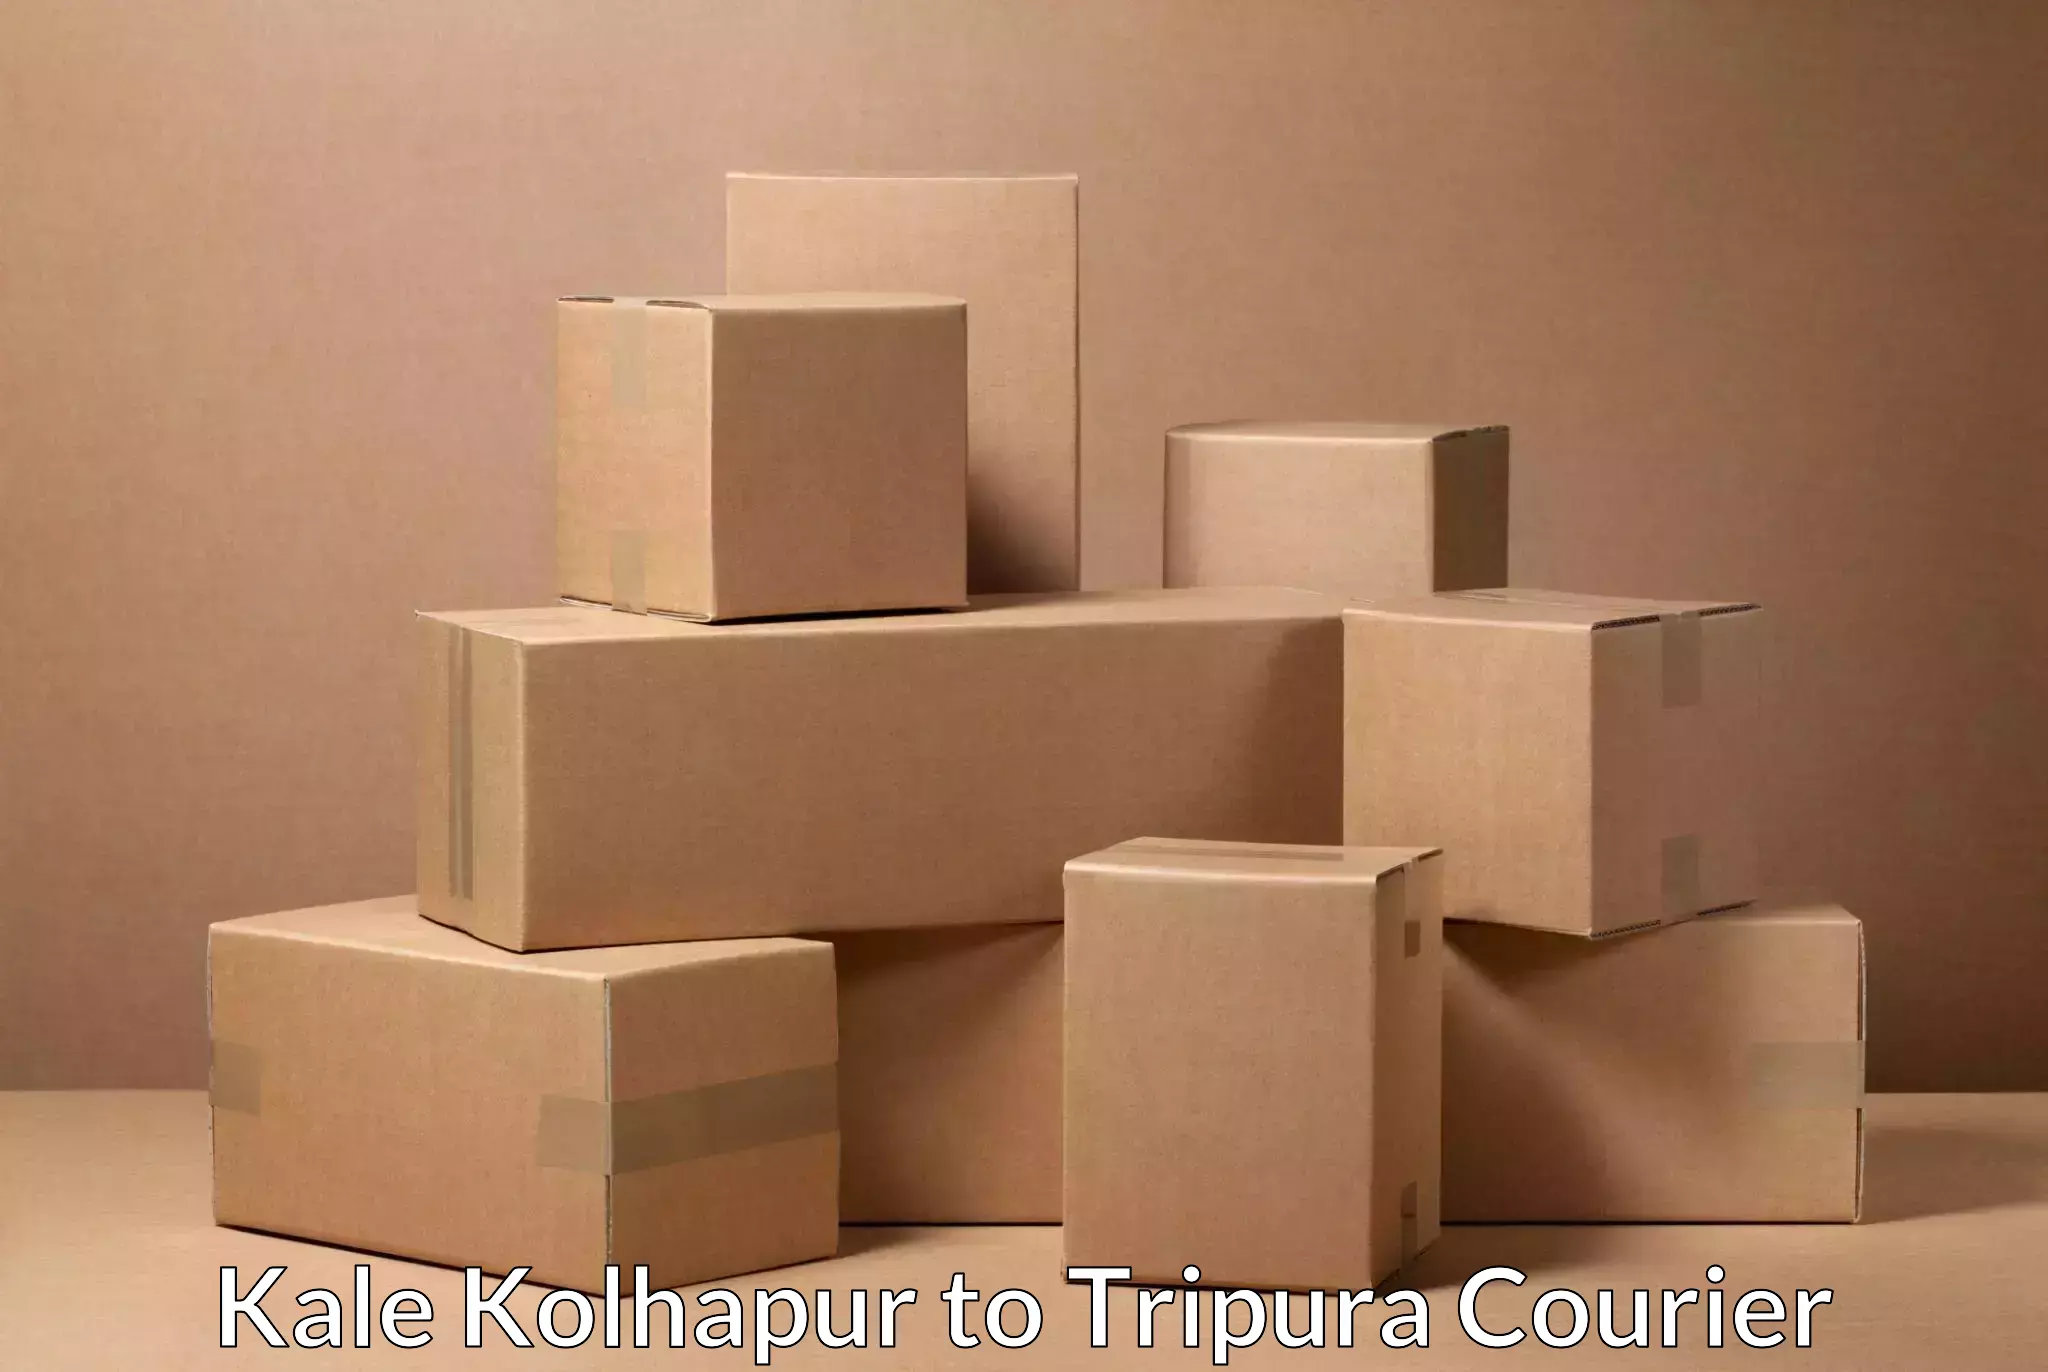 Efficient logistics management Kale Kolhapur to Tripura